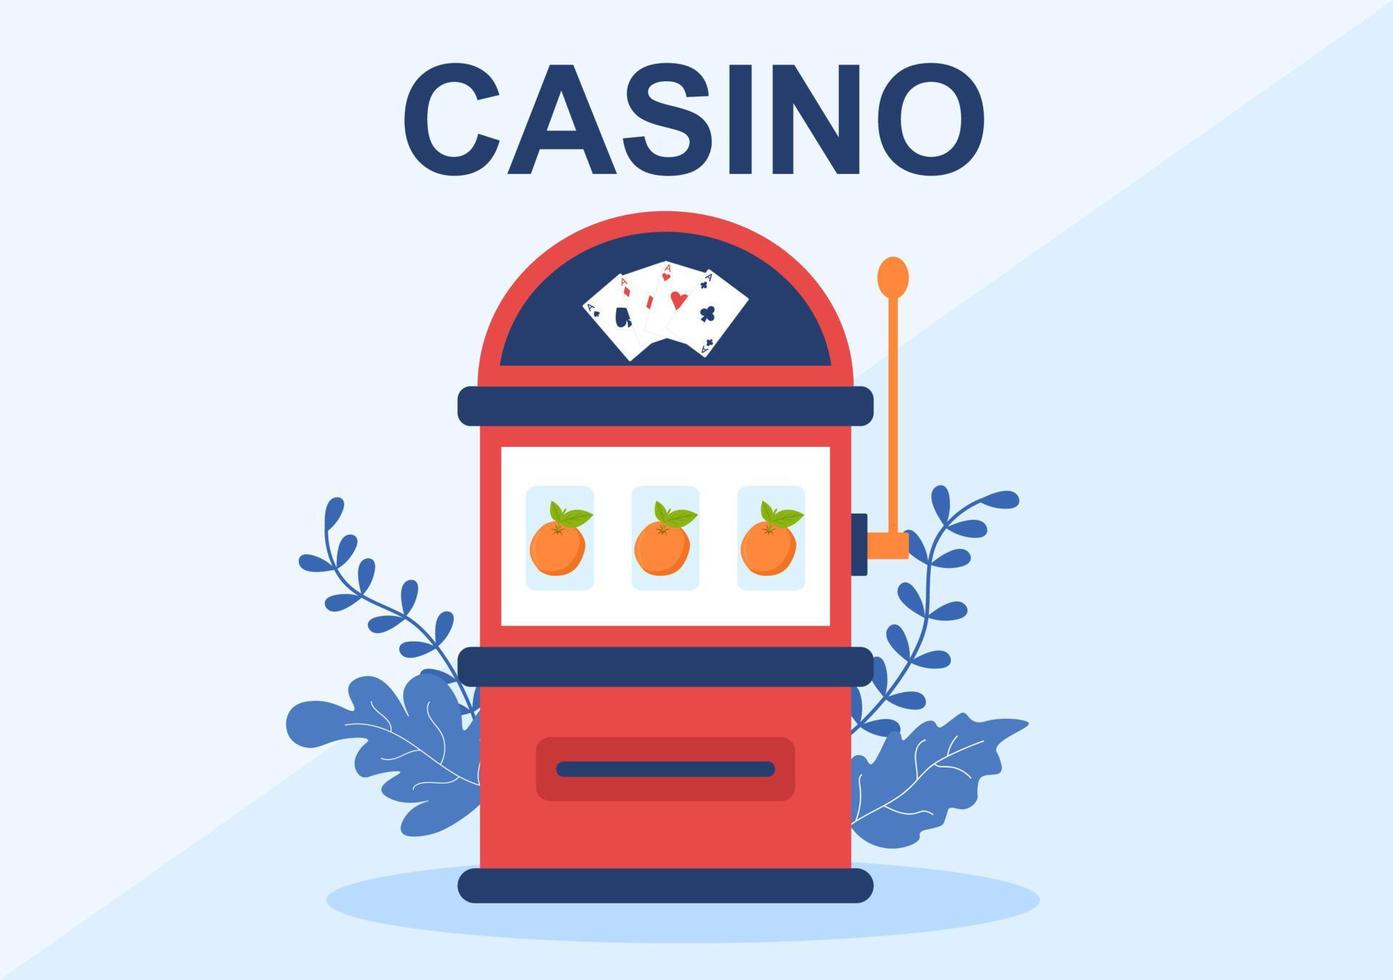 ilustración de dibujos animados de casino con botones, máquinas tragamonedas, ruleta, fichas de póquer y cartas de juego para el diseño de estilo de juego vector